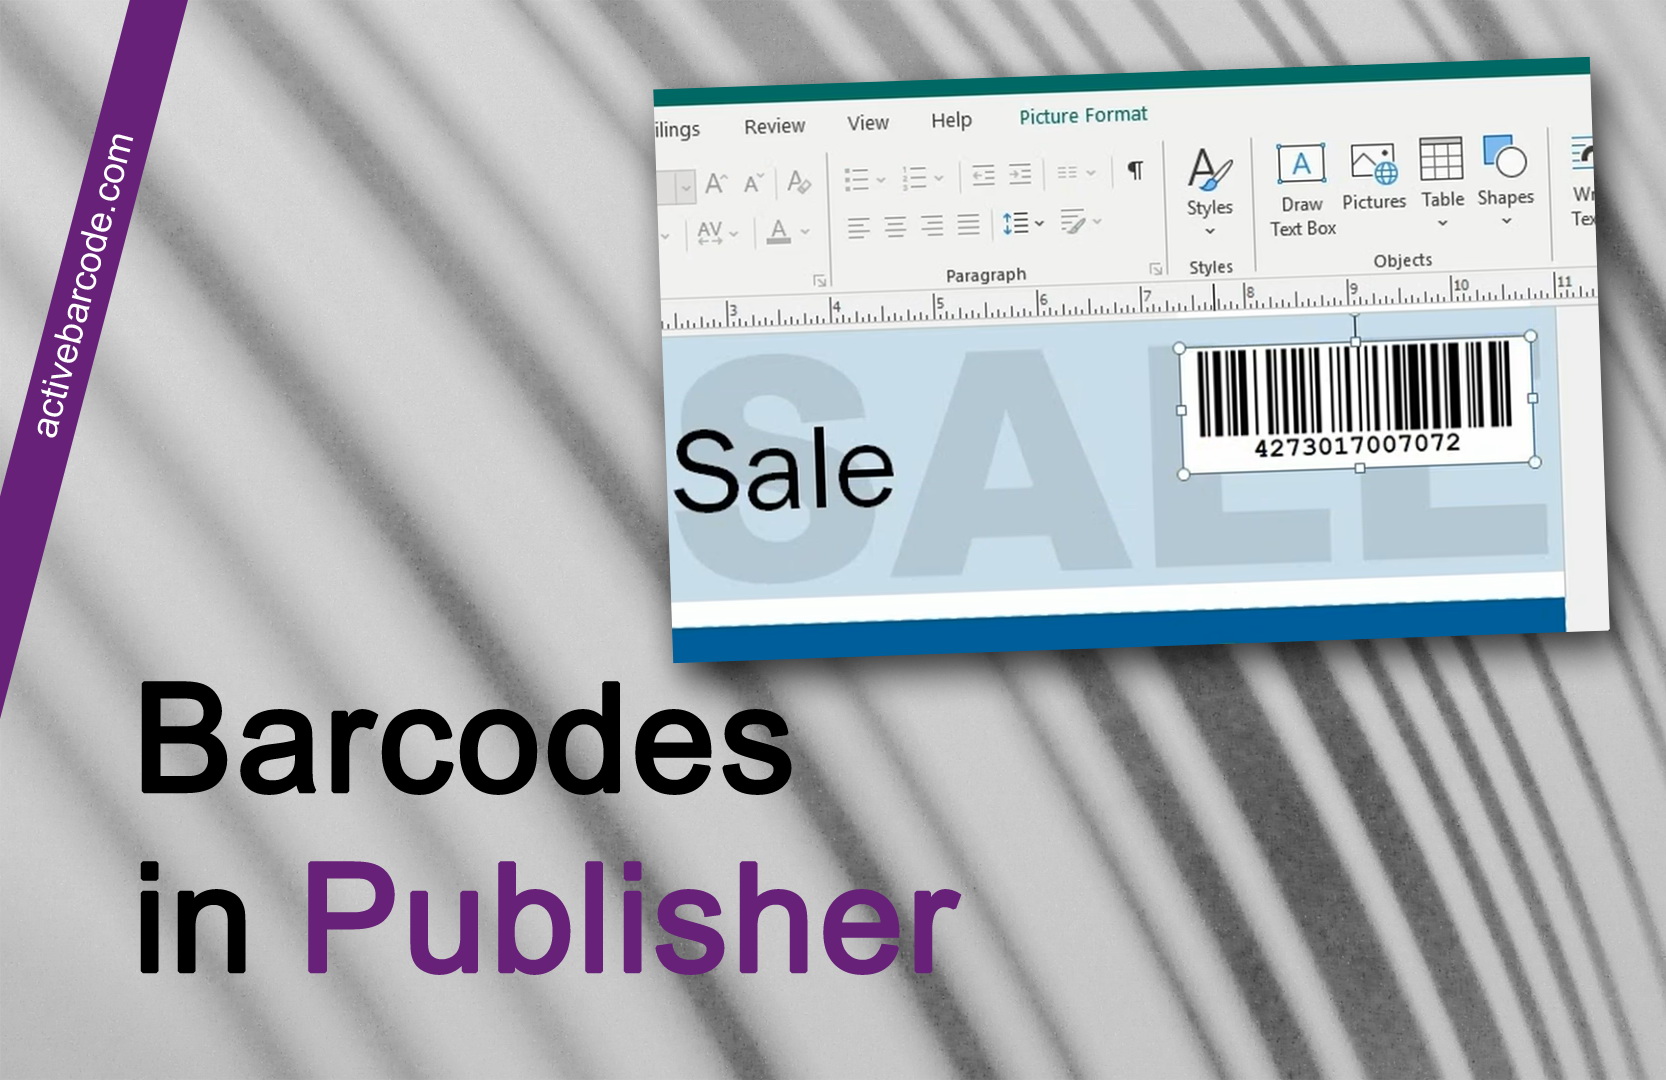 ActiveBarcode: Comment ajouter un code-barres à un document via le presse-papiers ?